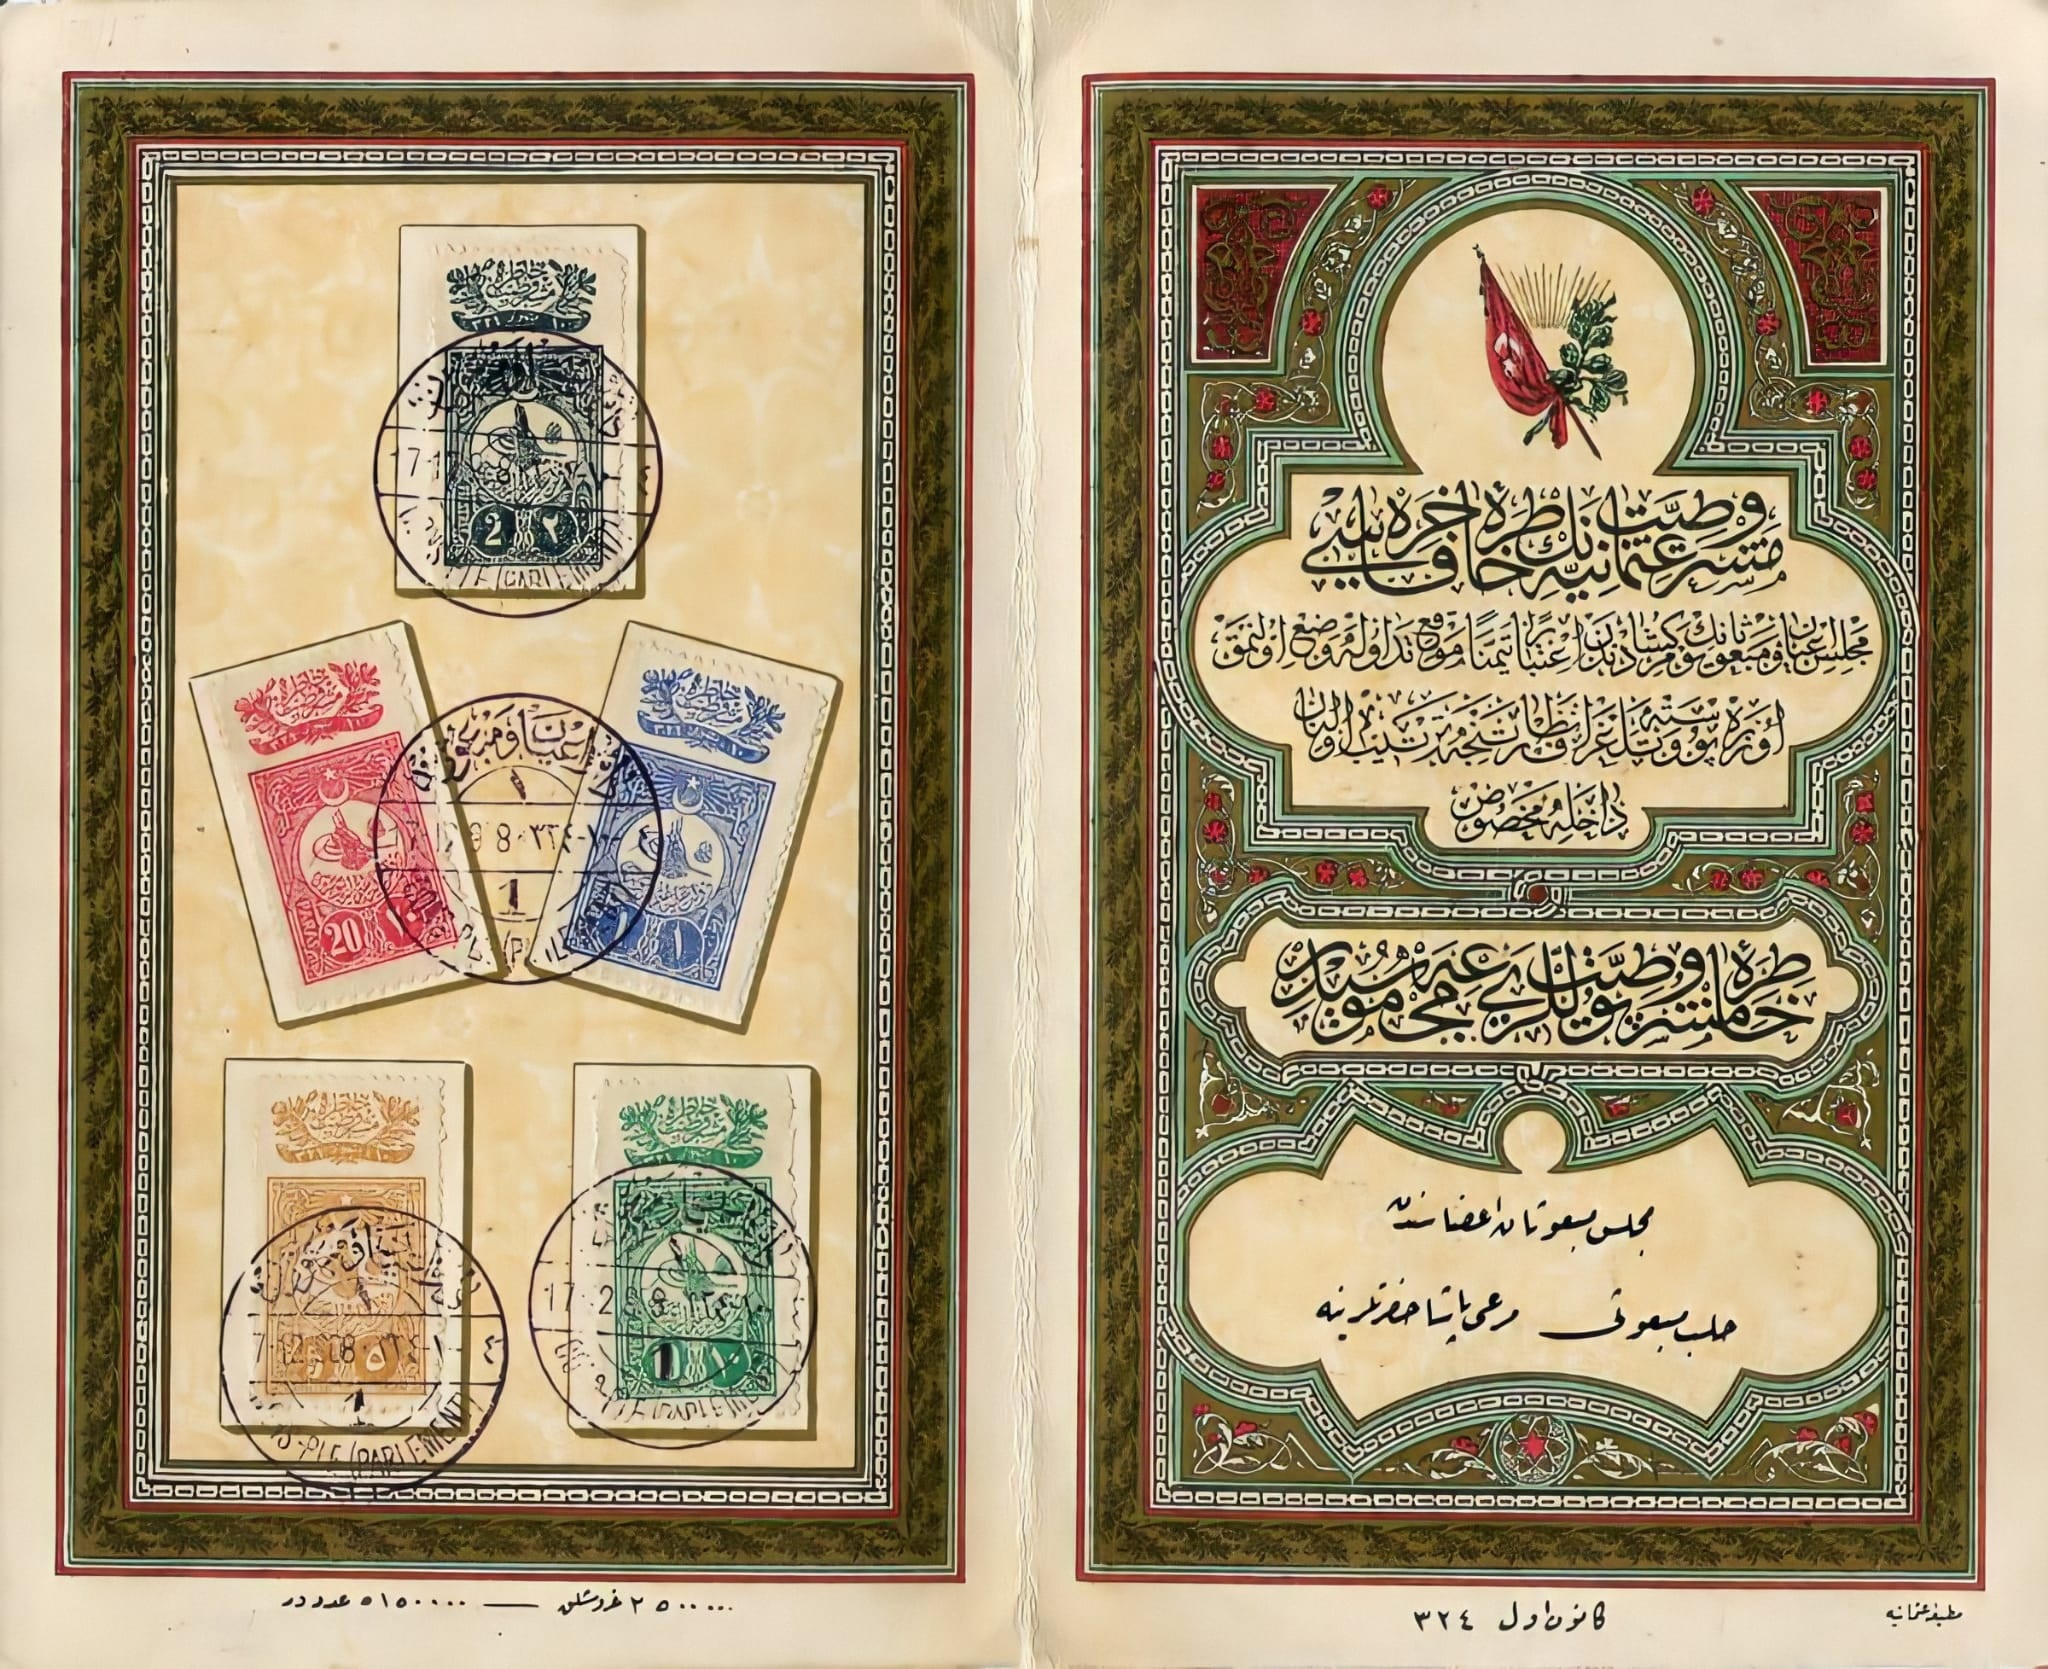 التاريخ السوري المعاصر - مجموعة الطوابع التذكارية المهداة إلى مرعي باشا الملاح